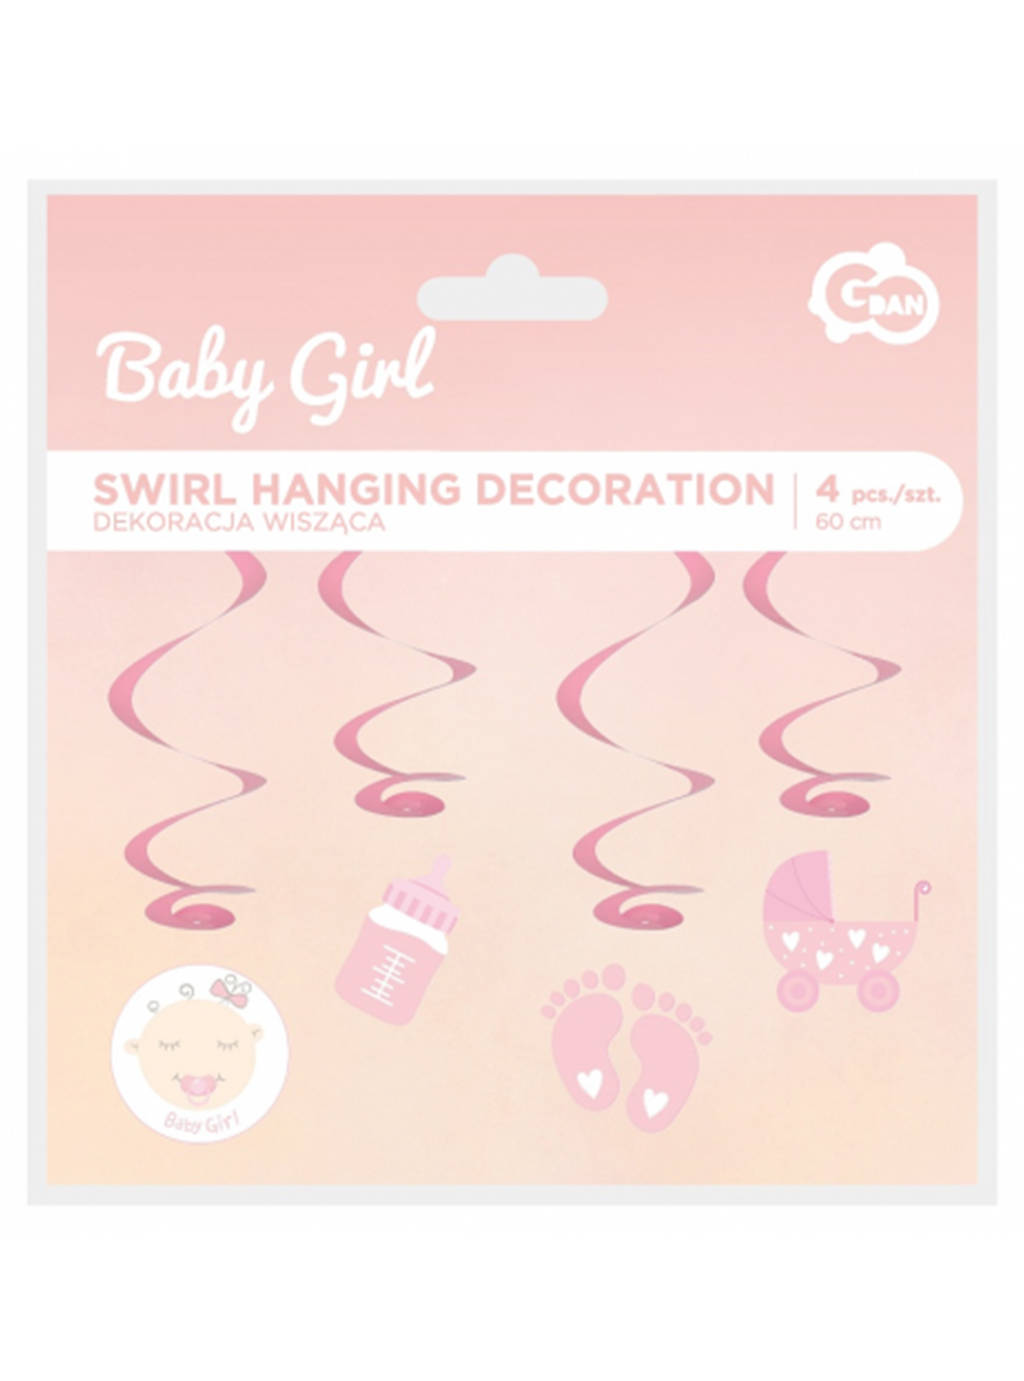 Růžová závěsná dekorace Baby Girl 4ks - 60cm